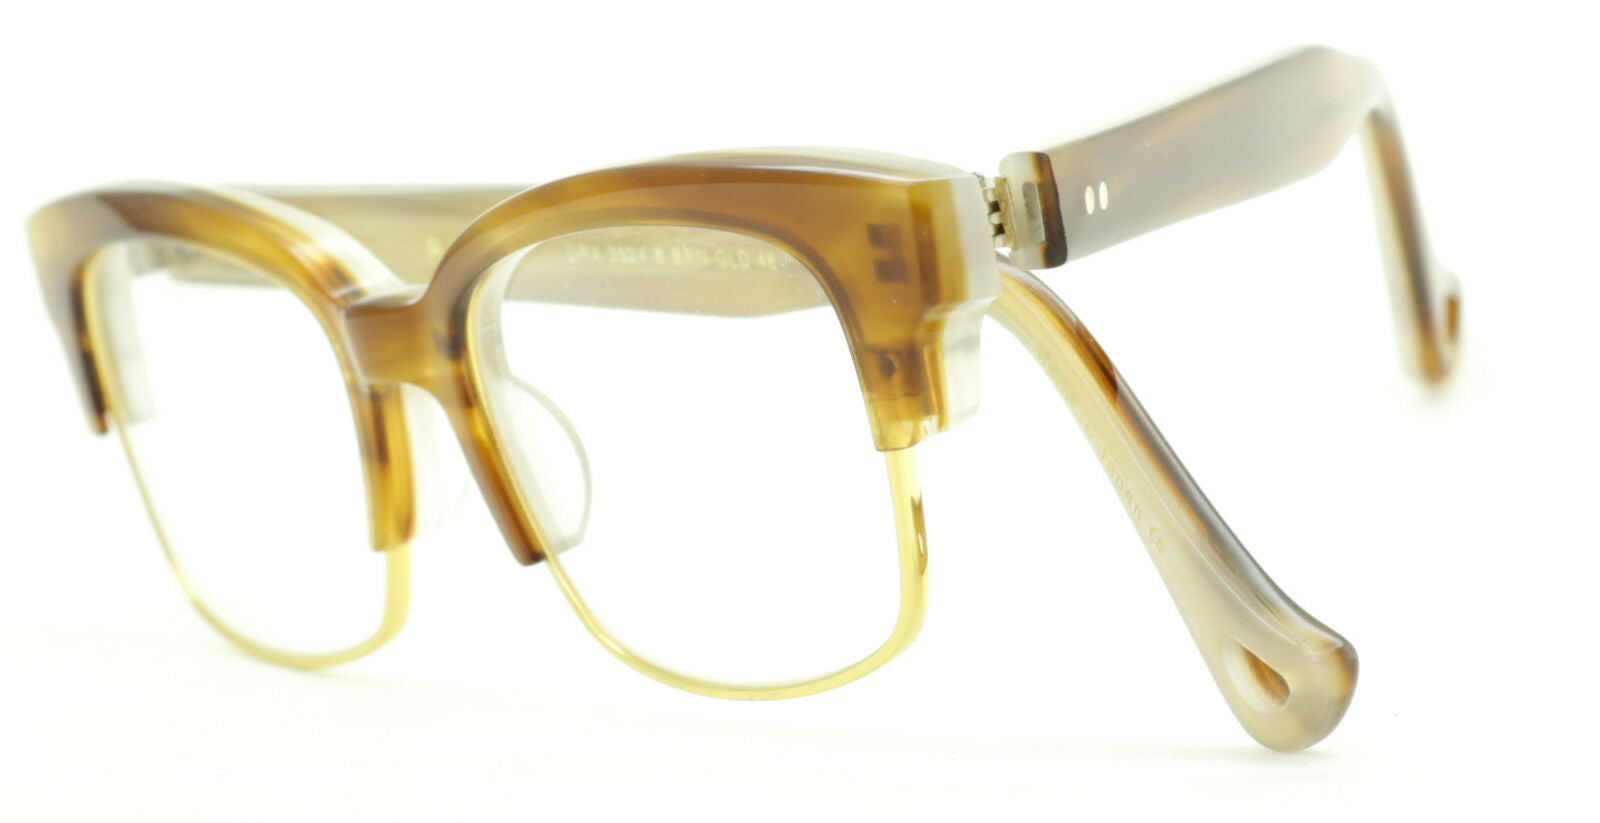 DITA RIRE DRX-3024 B BRN FRAMES NEW RX Optical Glasses Eyewear Eyeglasses - BNIB